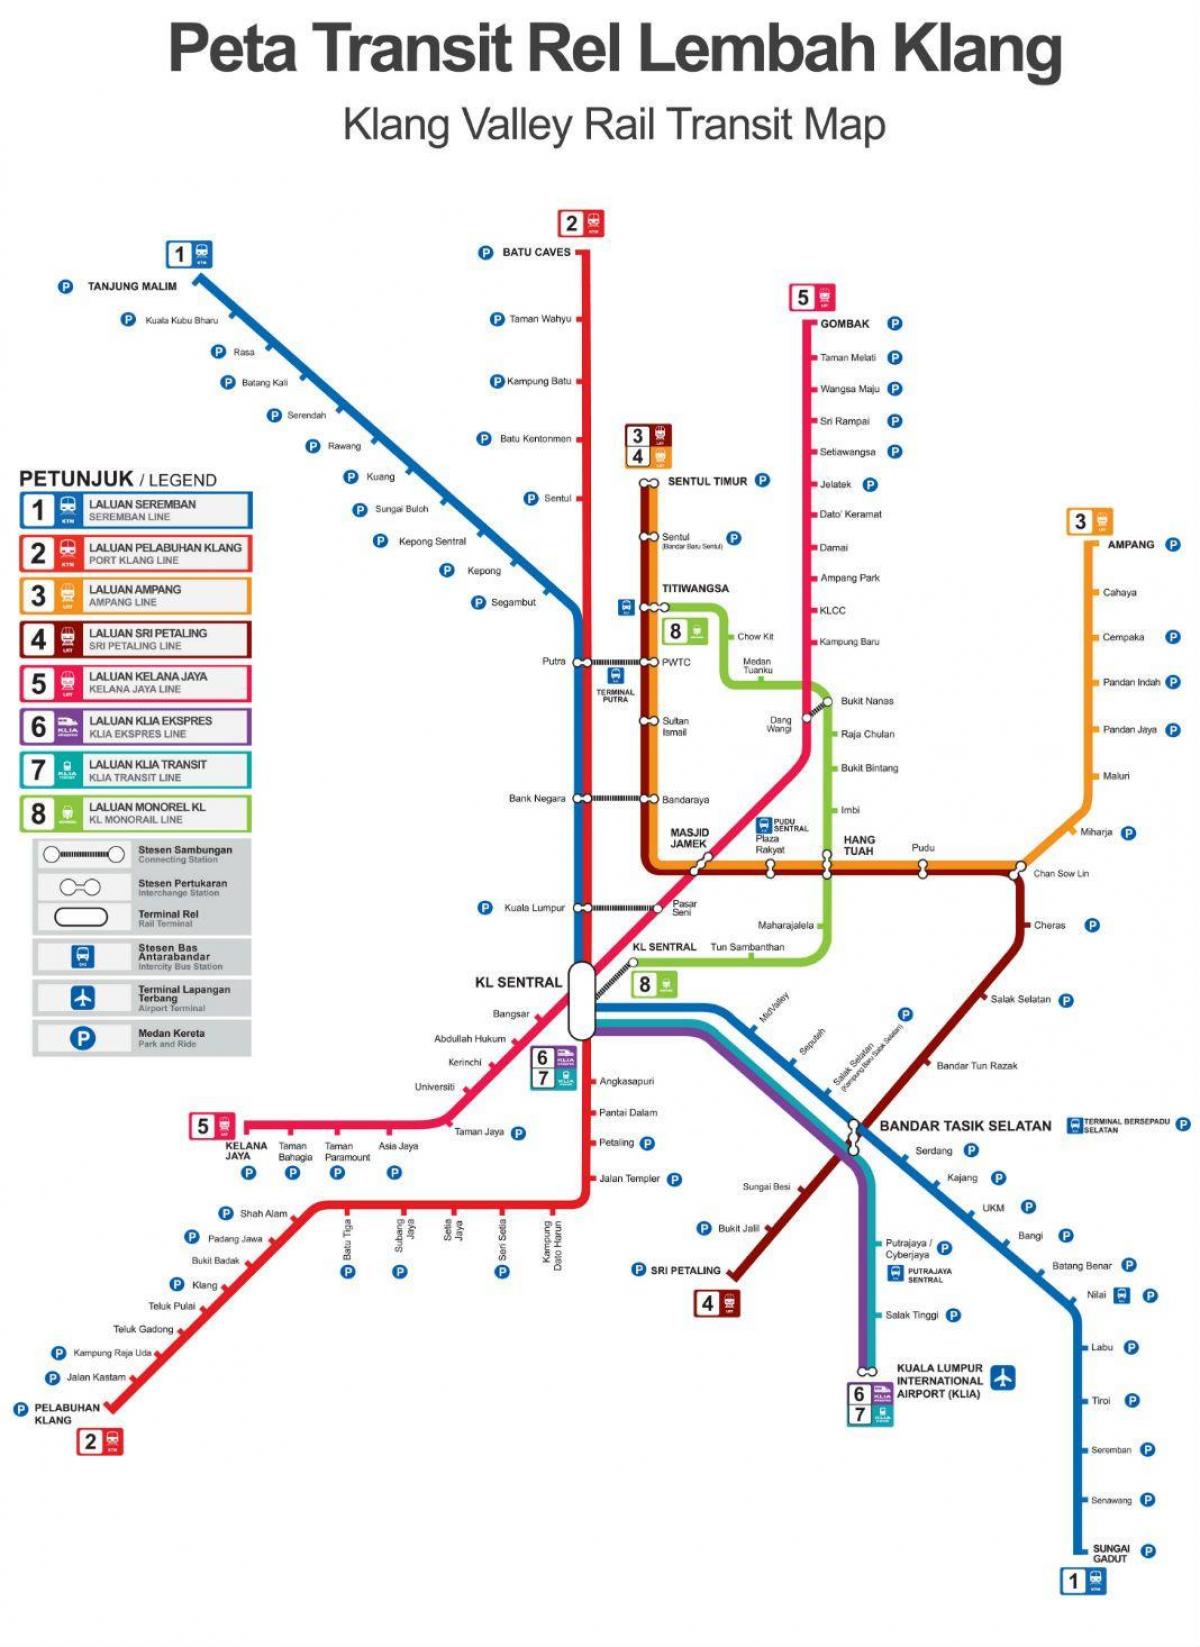 воз маршрутата на мапата малезија